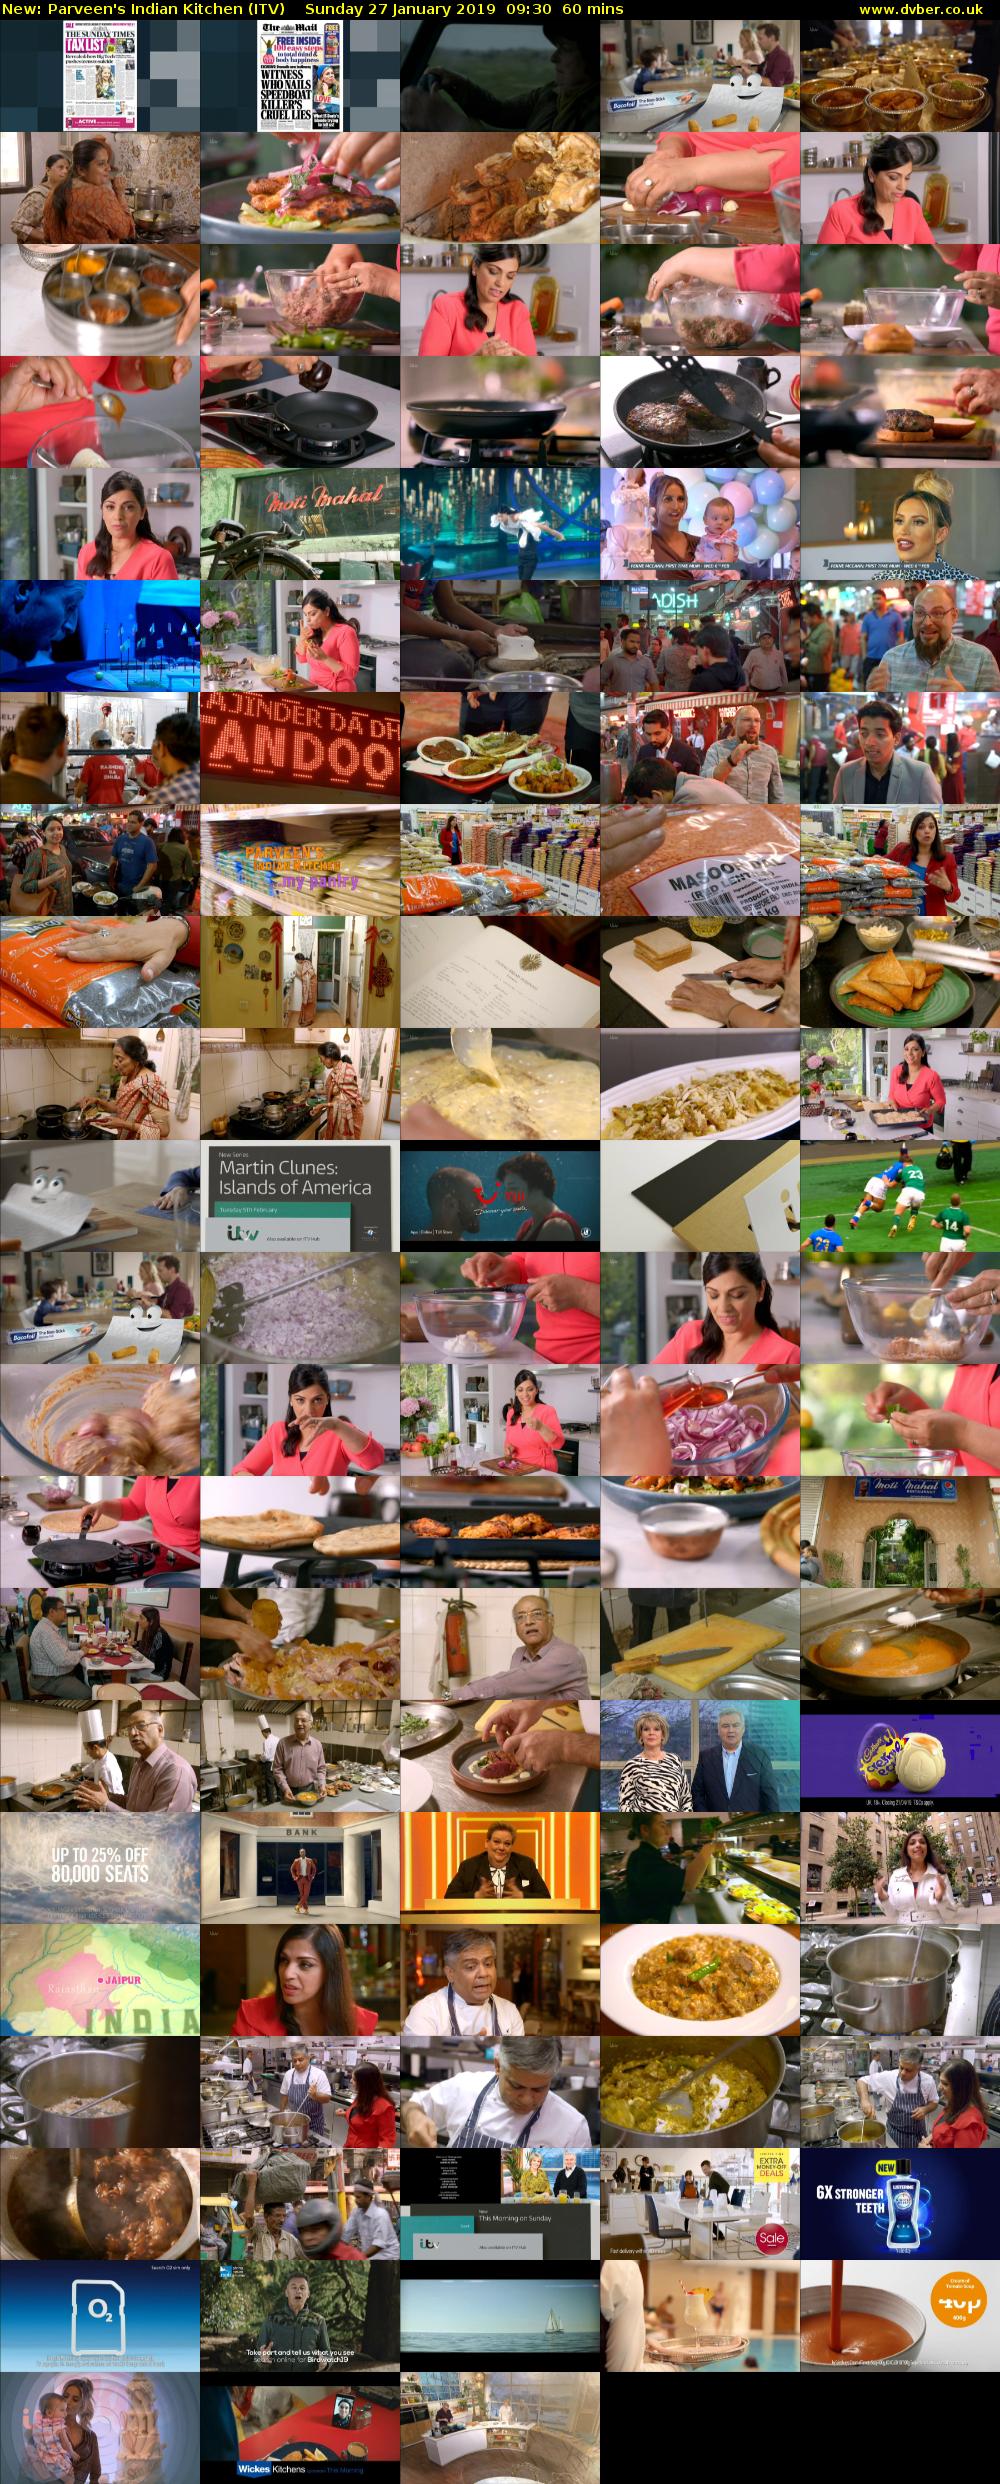 Parveen's Indian Kitchen (ITV) Sunday 27 January 2019 09:30 - 10:30